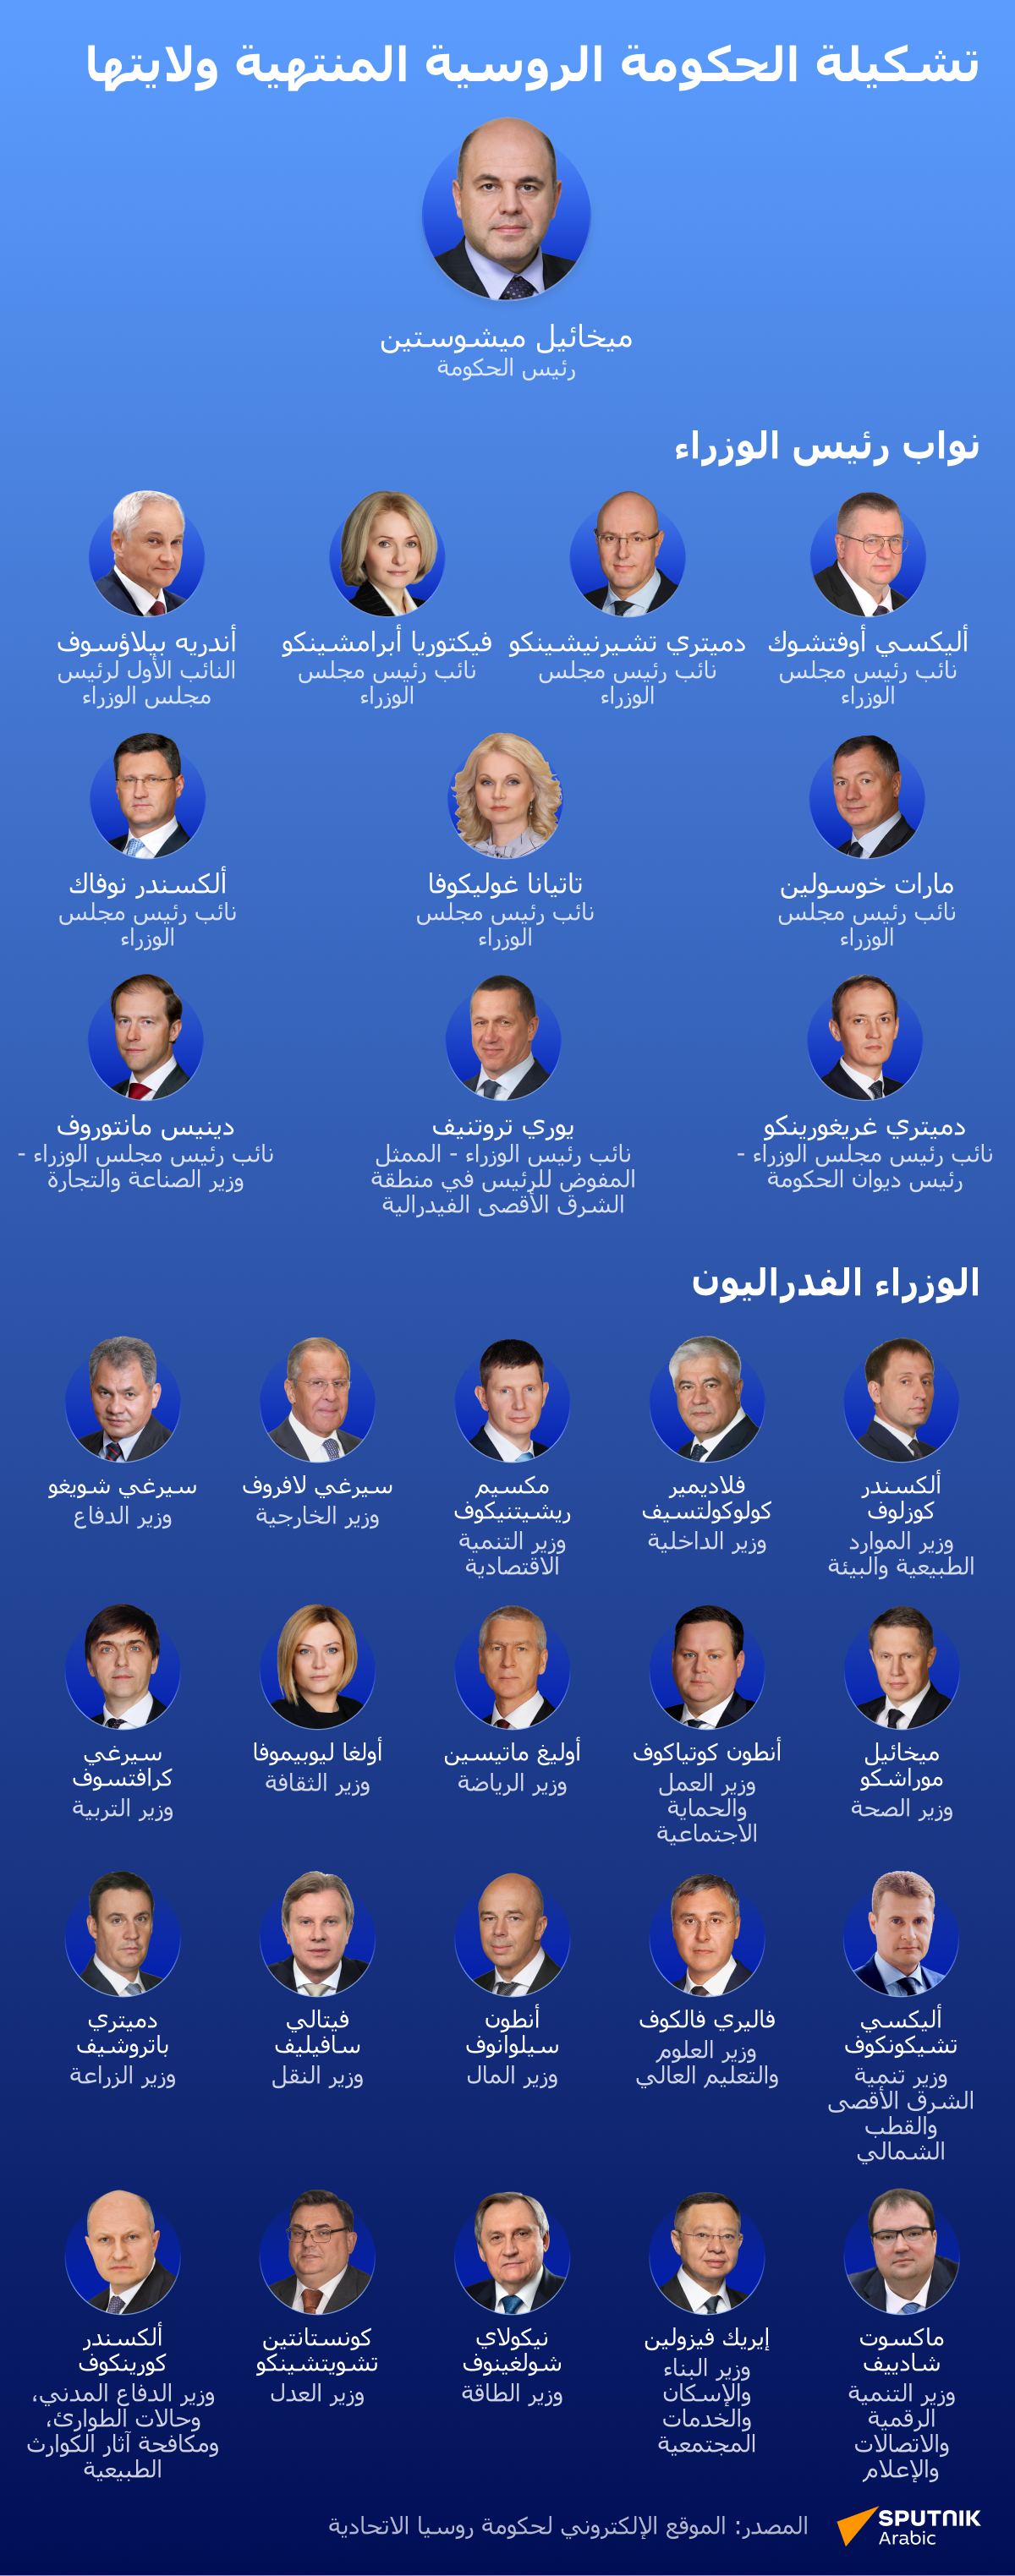 تشكيلة الحكومة الروسية المنتهية ولايتها - سبوتنيك عربي